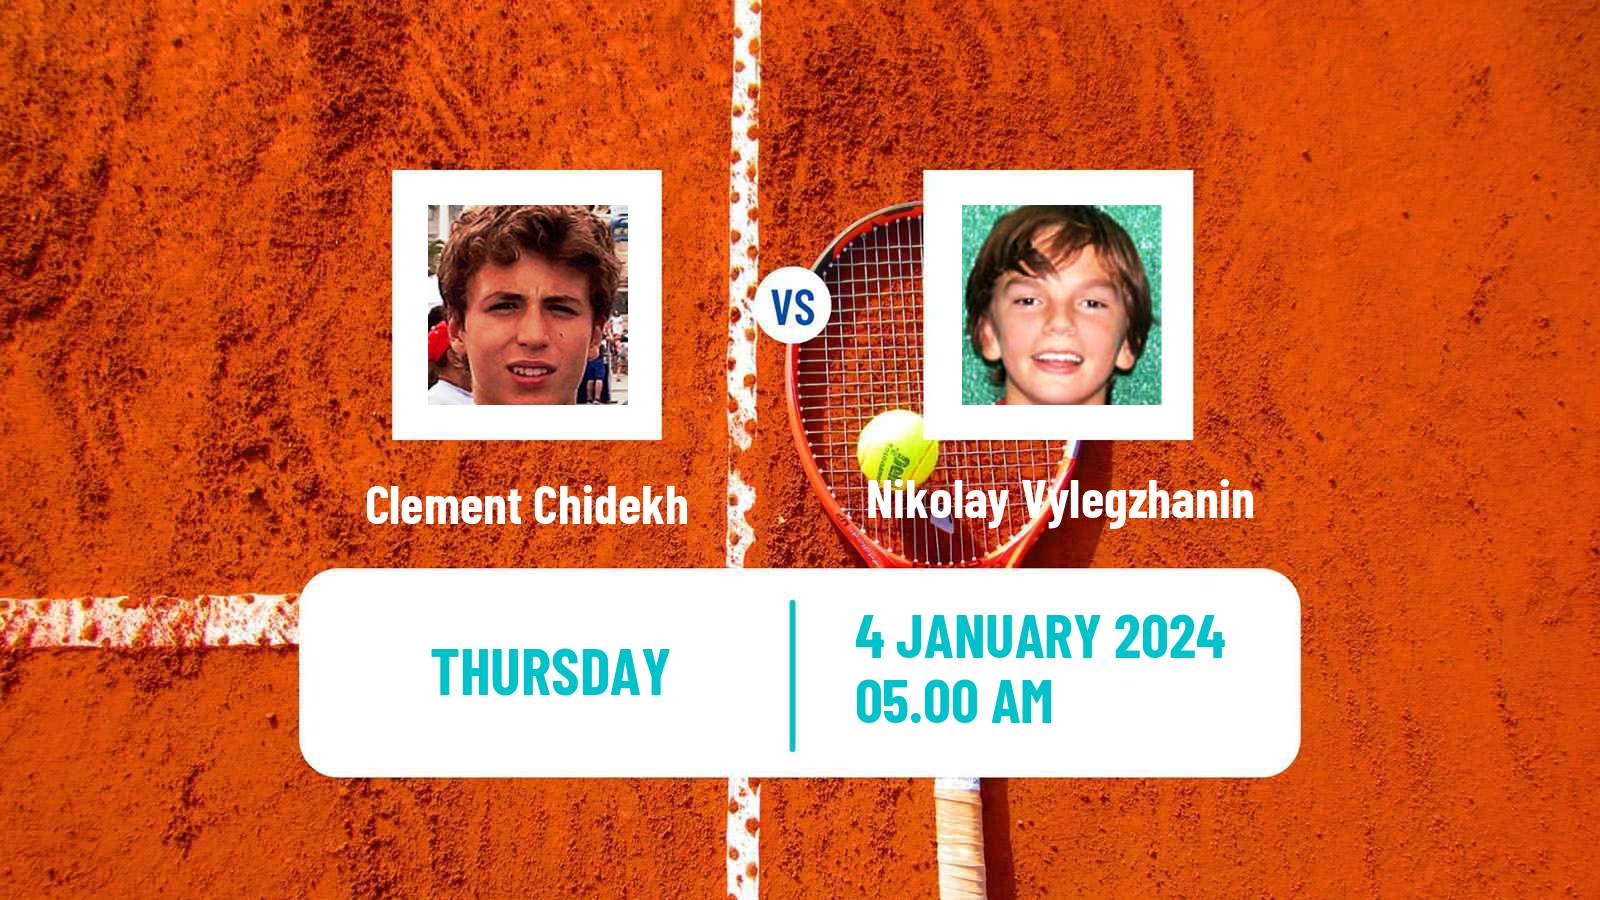 Tennis ITF M25 Esch Alzette Men Clement Chidekh - Nikolay Vylegzhanin